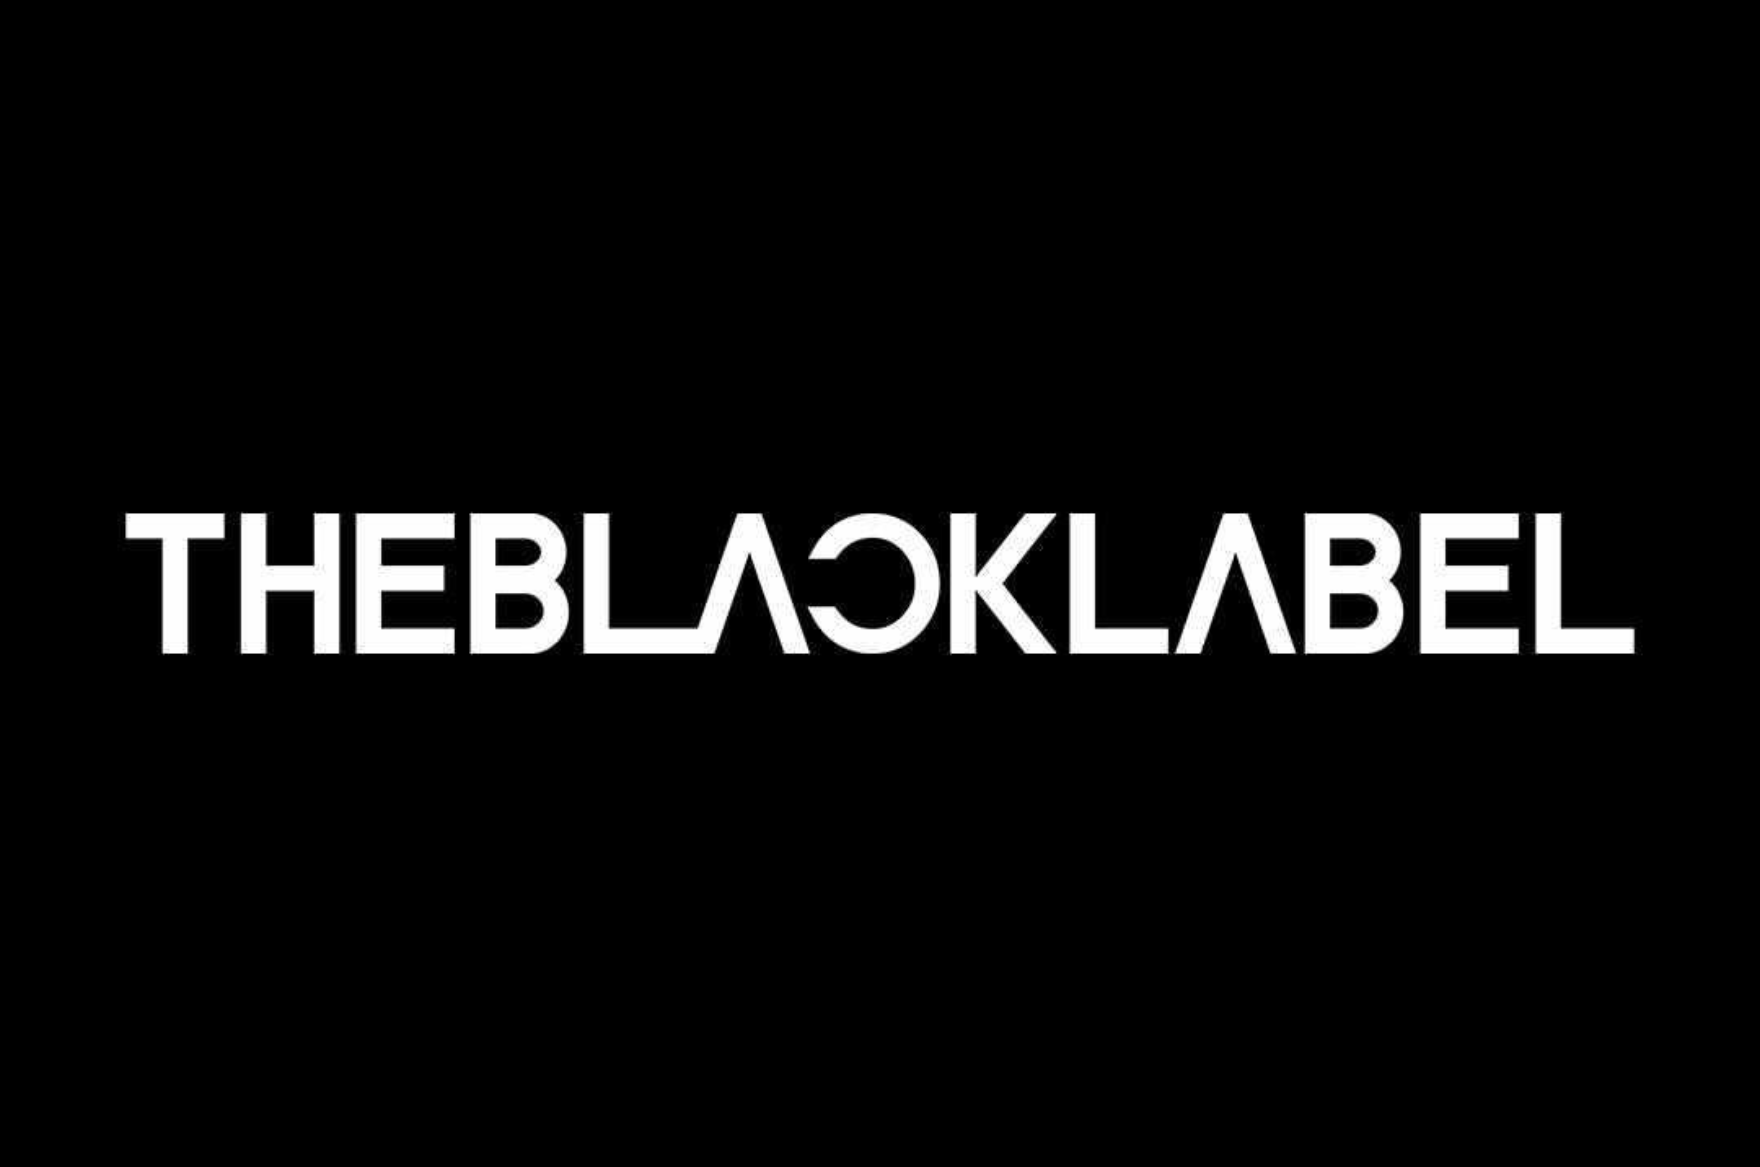 Equipe da THEBLACKLABEL sofre acidente em ensaio fotográfico, diz imprensa coreana